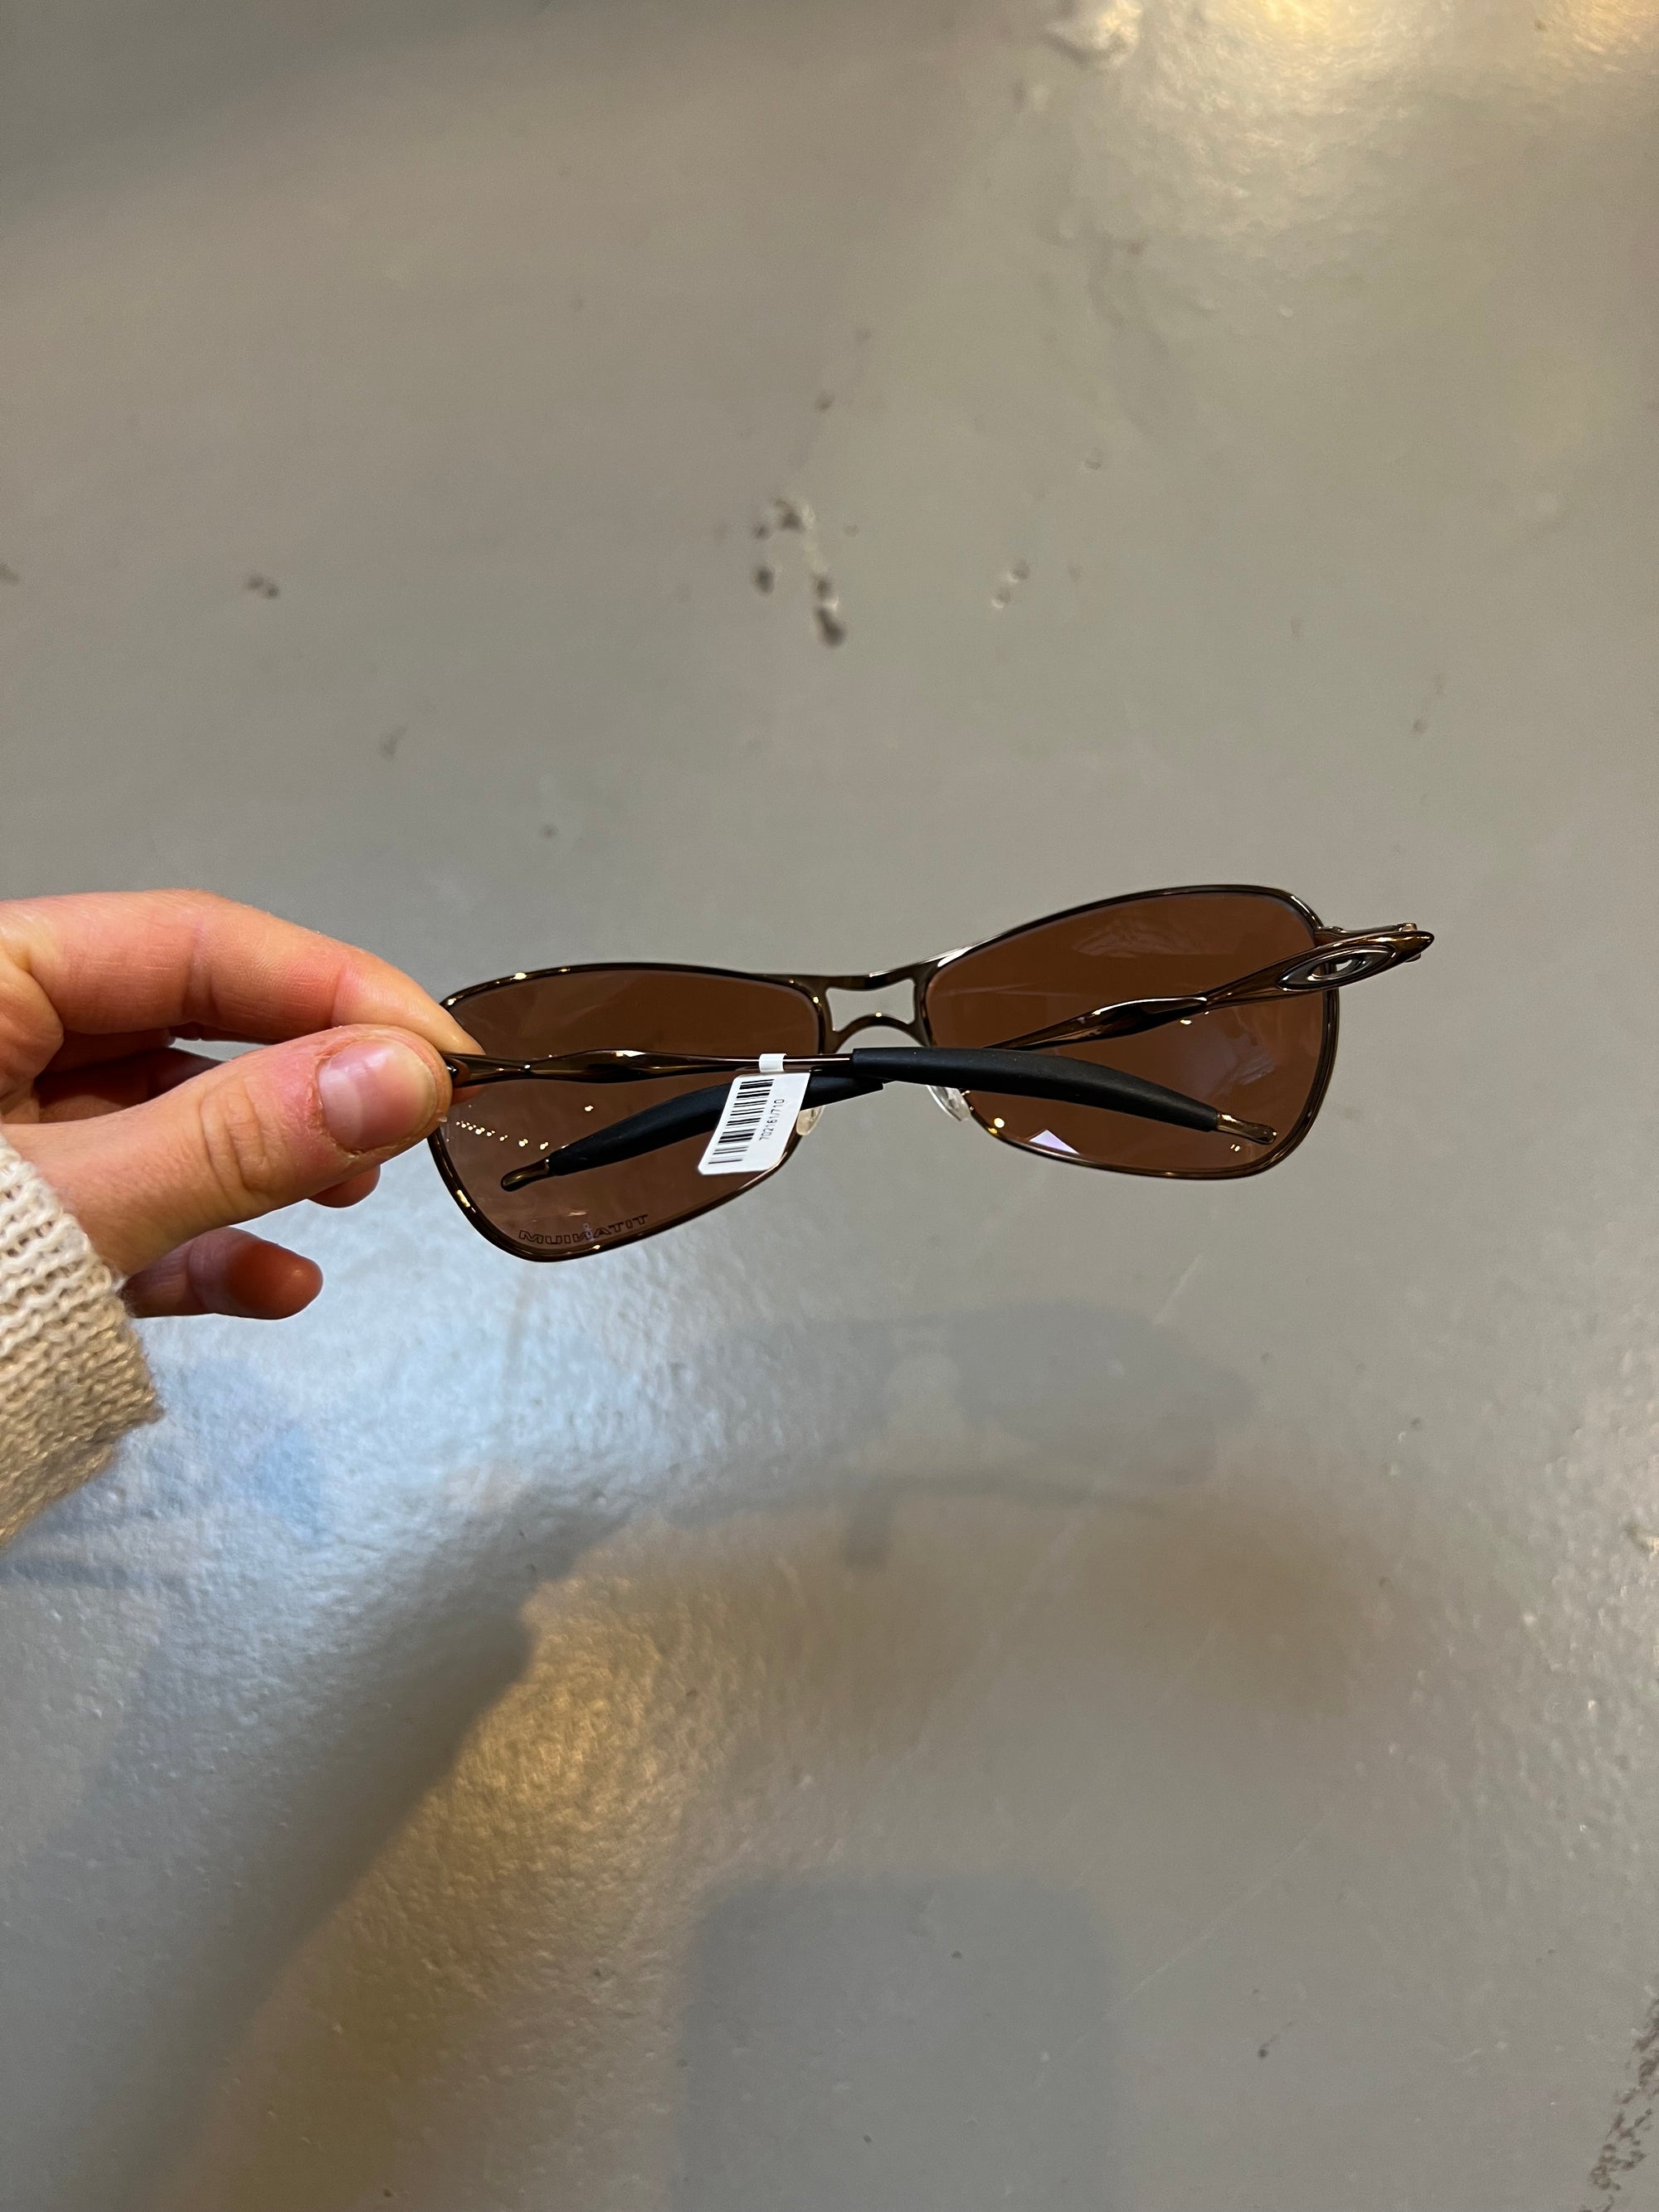 Produktbild von Oakley Titanium Sunglasses von hinten